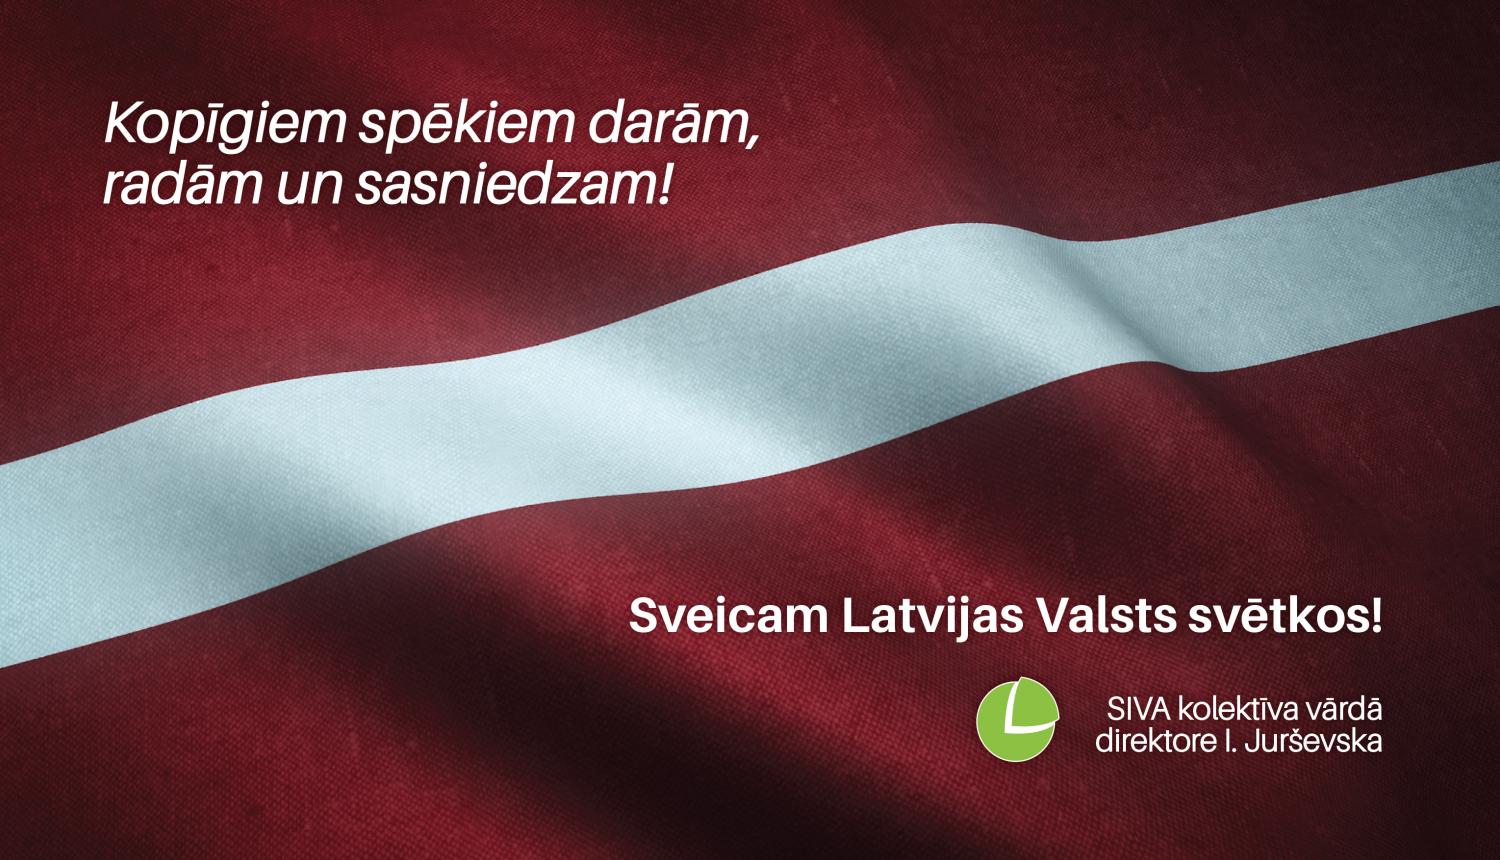 SIVA kolektīva sveiciens Latvijas Valsts svētkos: "Kopīgiem spēkiem darām, radām un sasniedzam"! Fonā redzams Latvijas valsts karogs